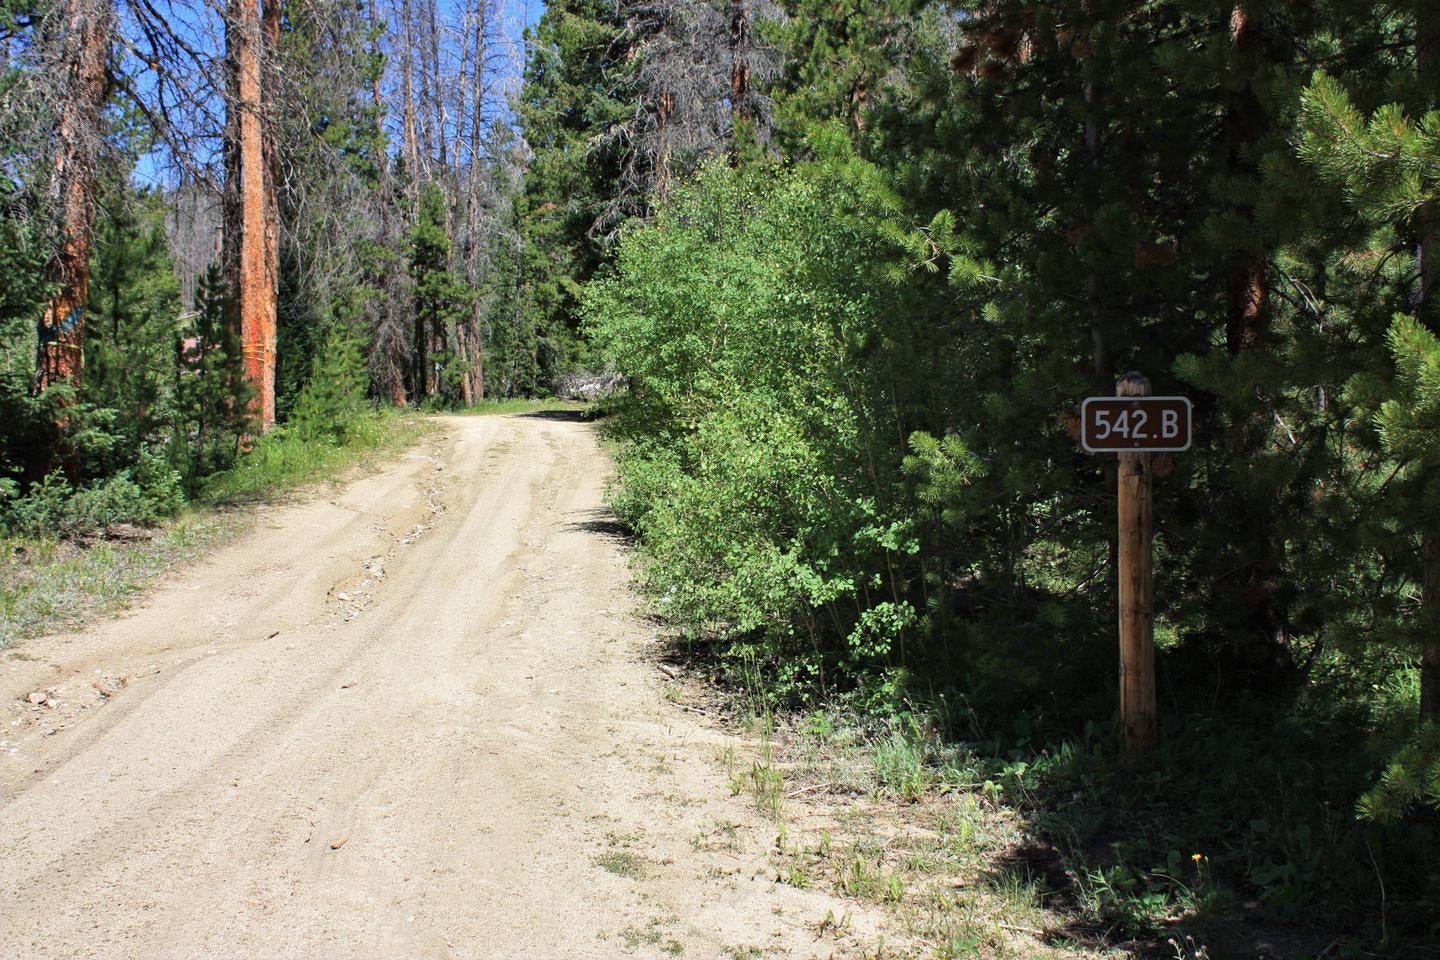 Keystone Ranger Station road sign



Credit: Alyssa Wesner - USDA Forest Service